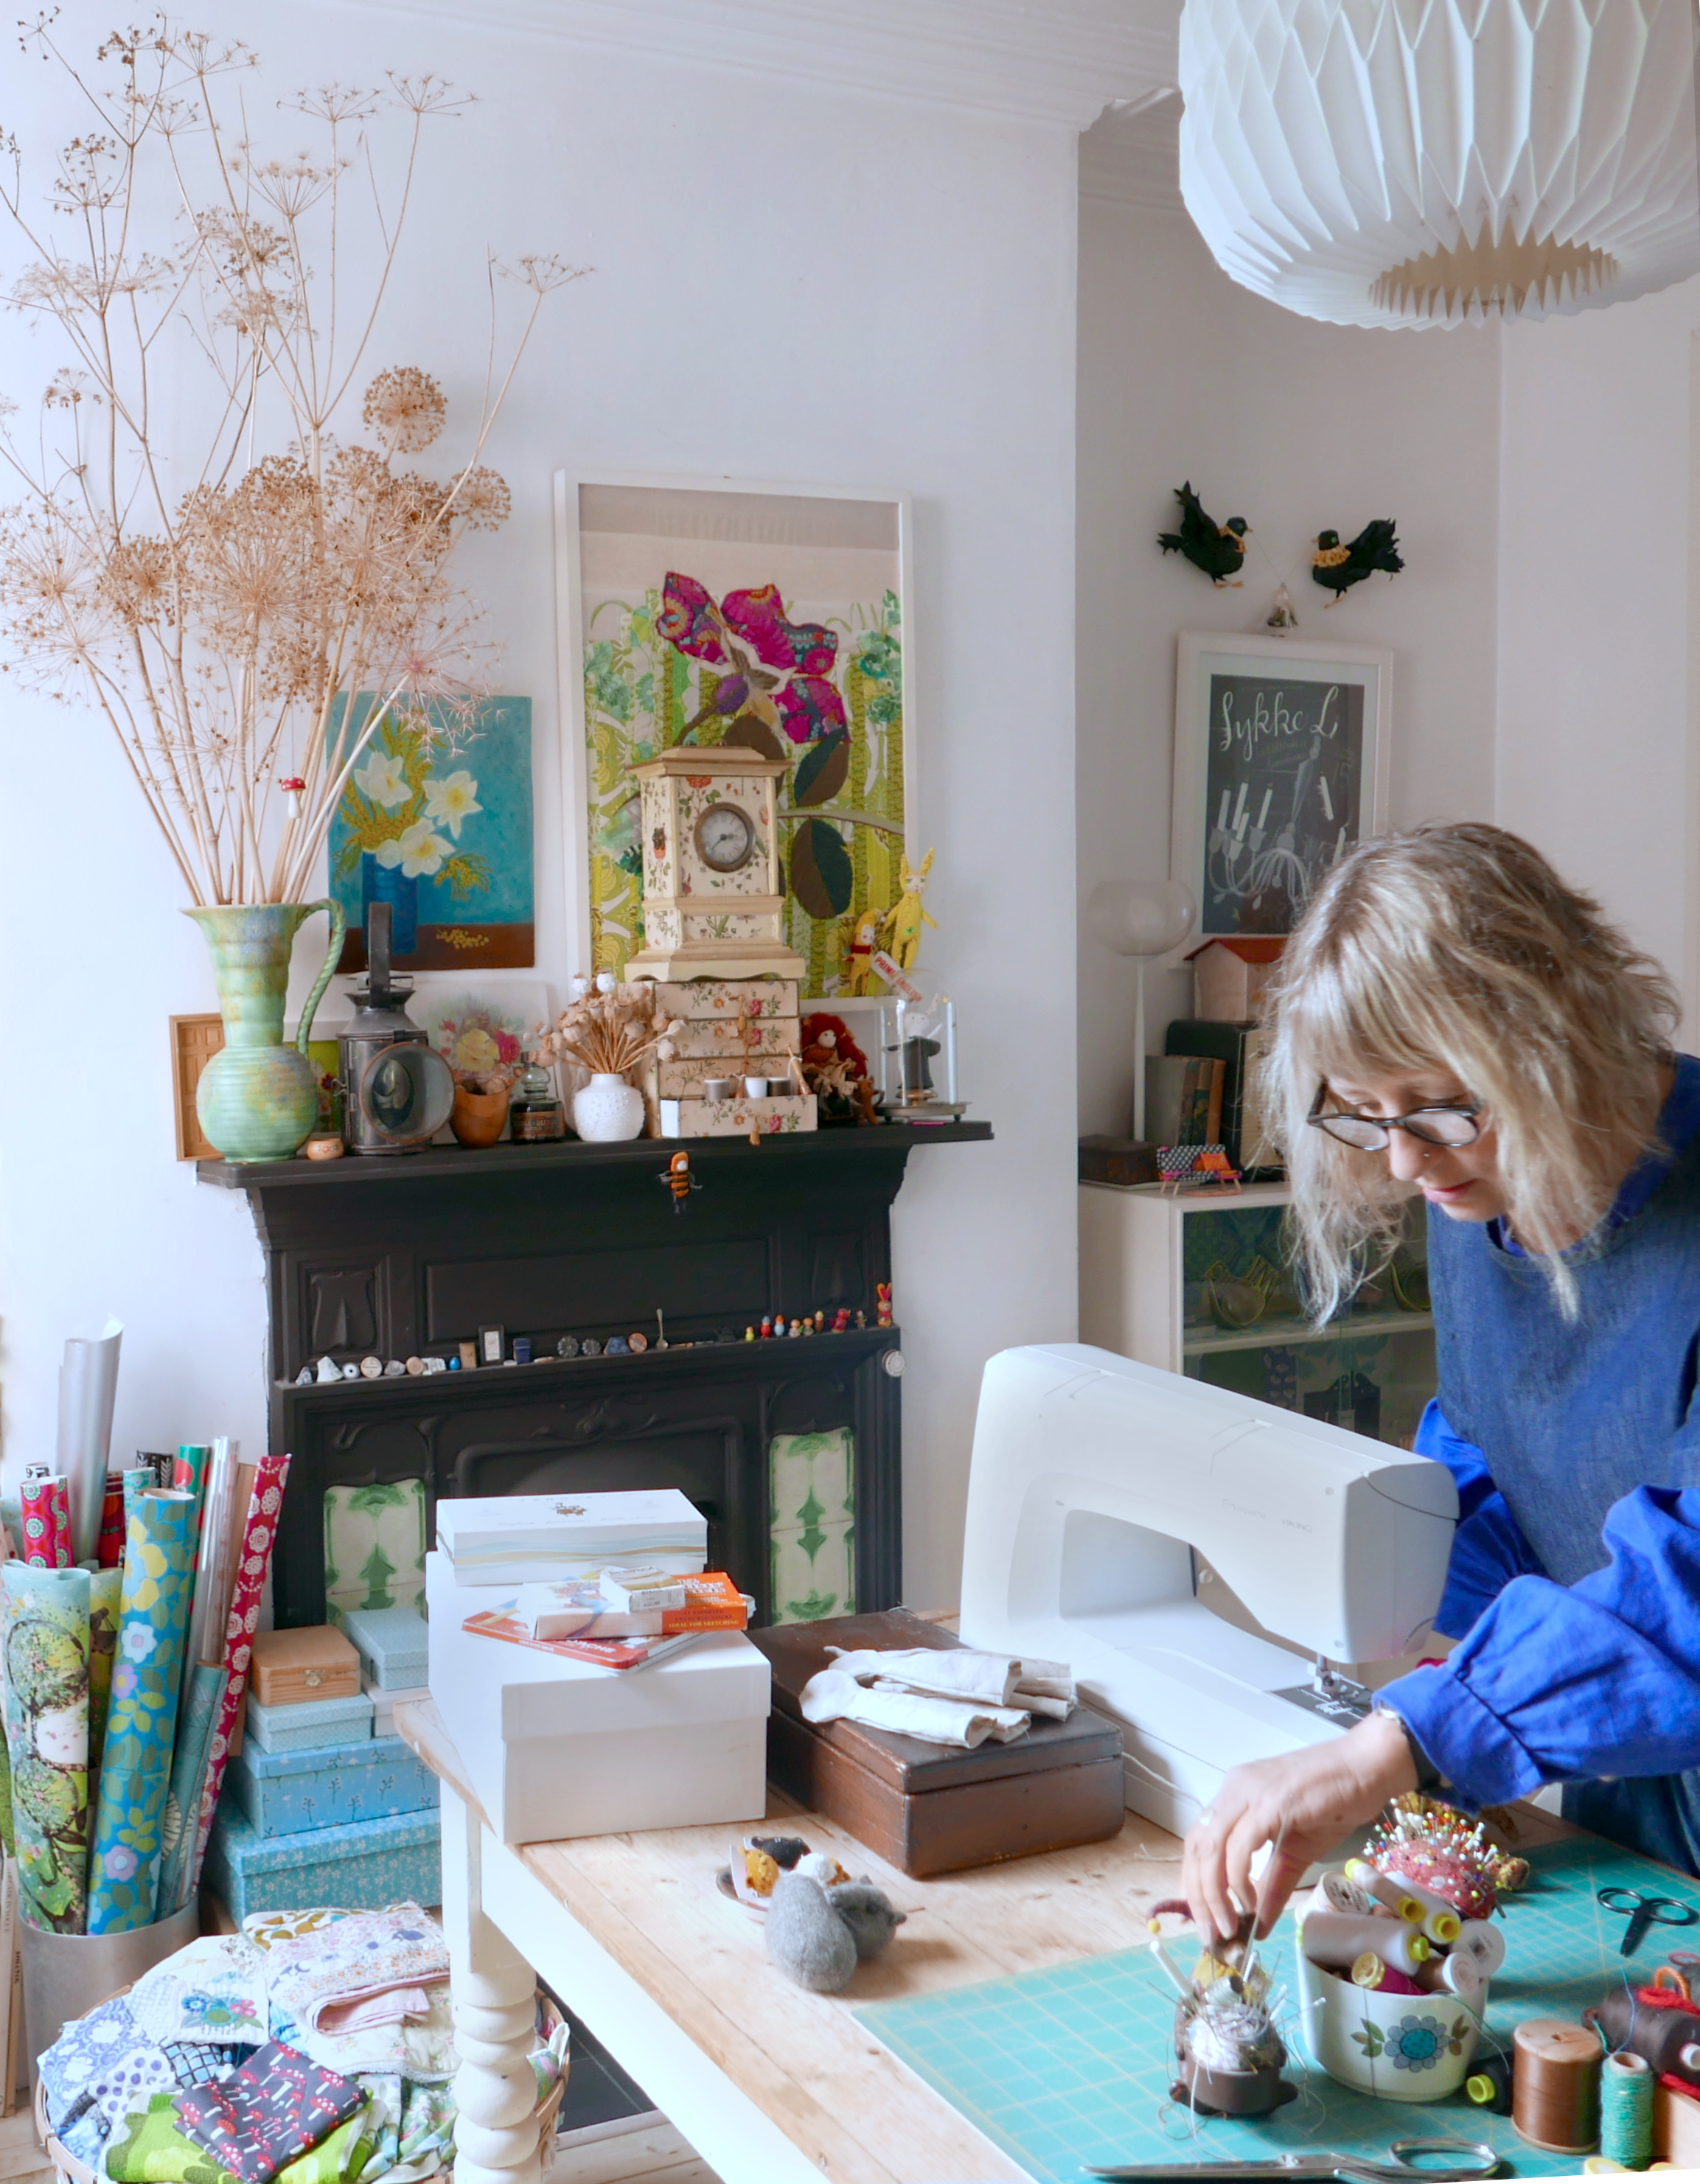 Sharon Everest of modflowers making teddy bears inside her home studio